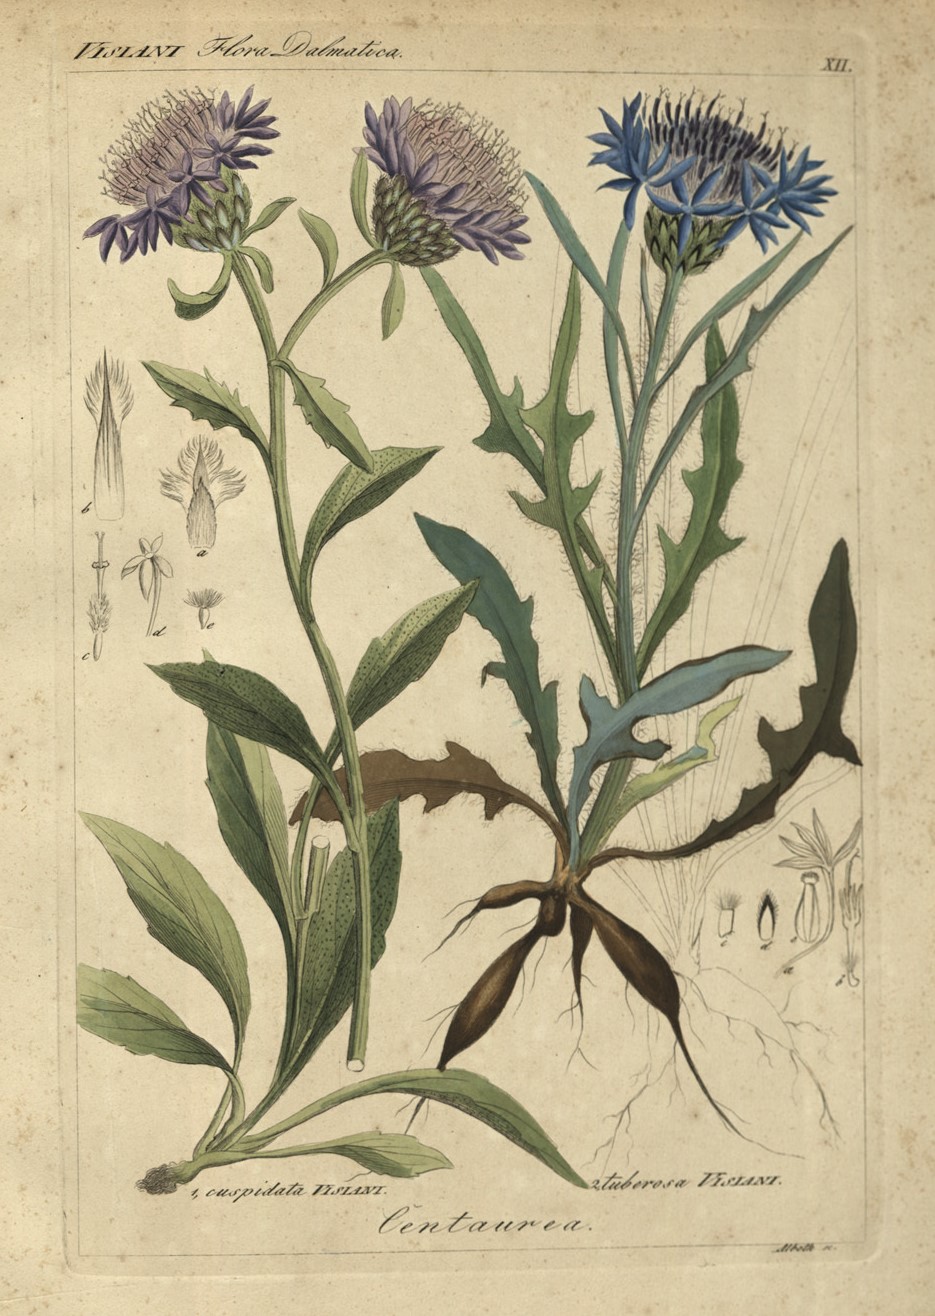 Tavola illustrata di due specie di Centaurea presenti nella Flora Dalmatica